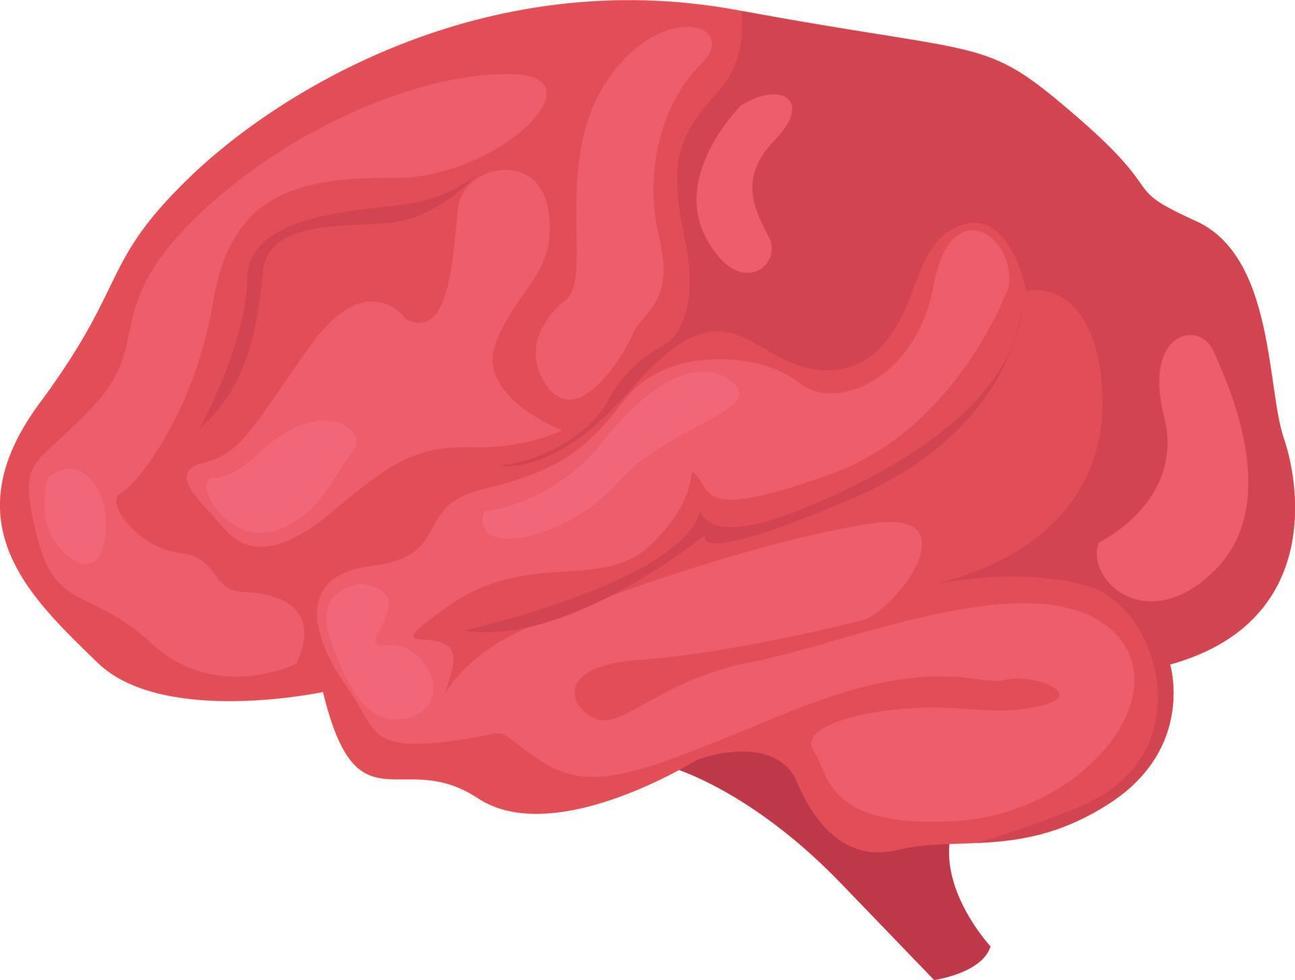 cerebro humano, ilustración, vector sobre fondo blanco.